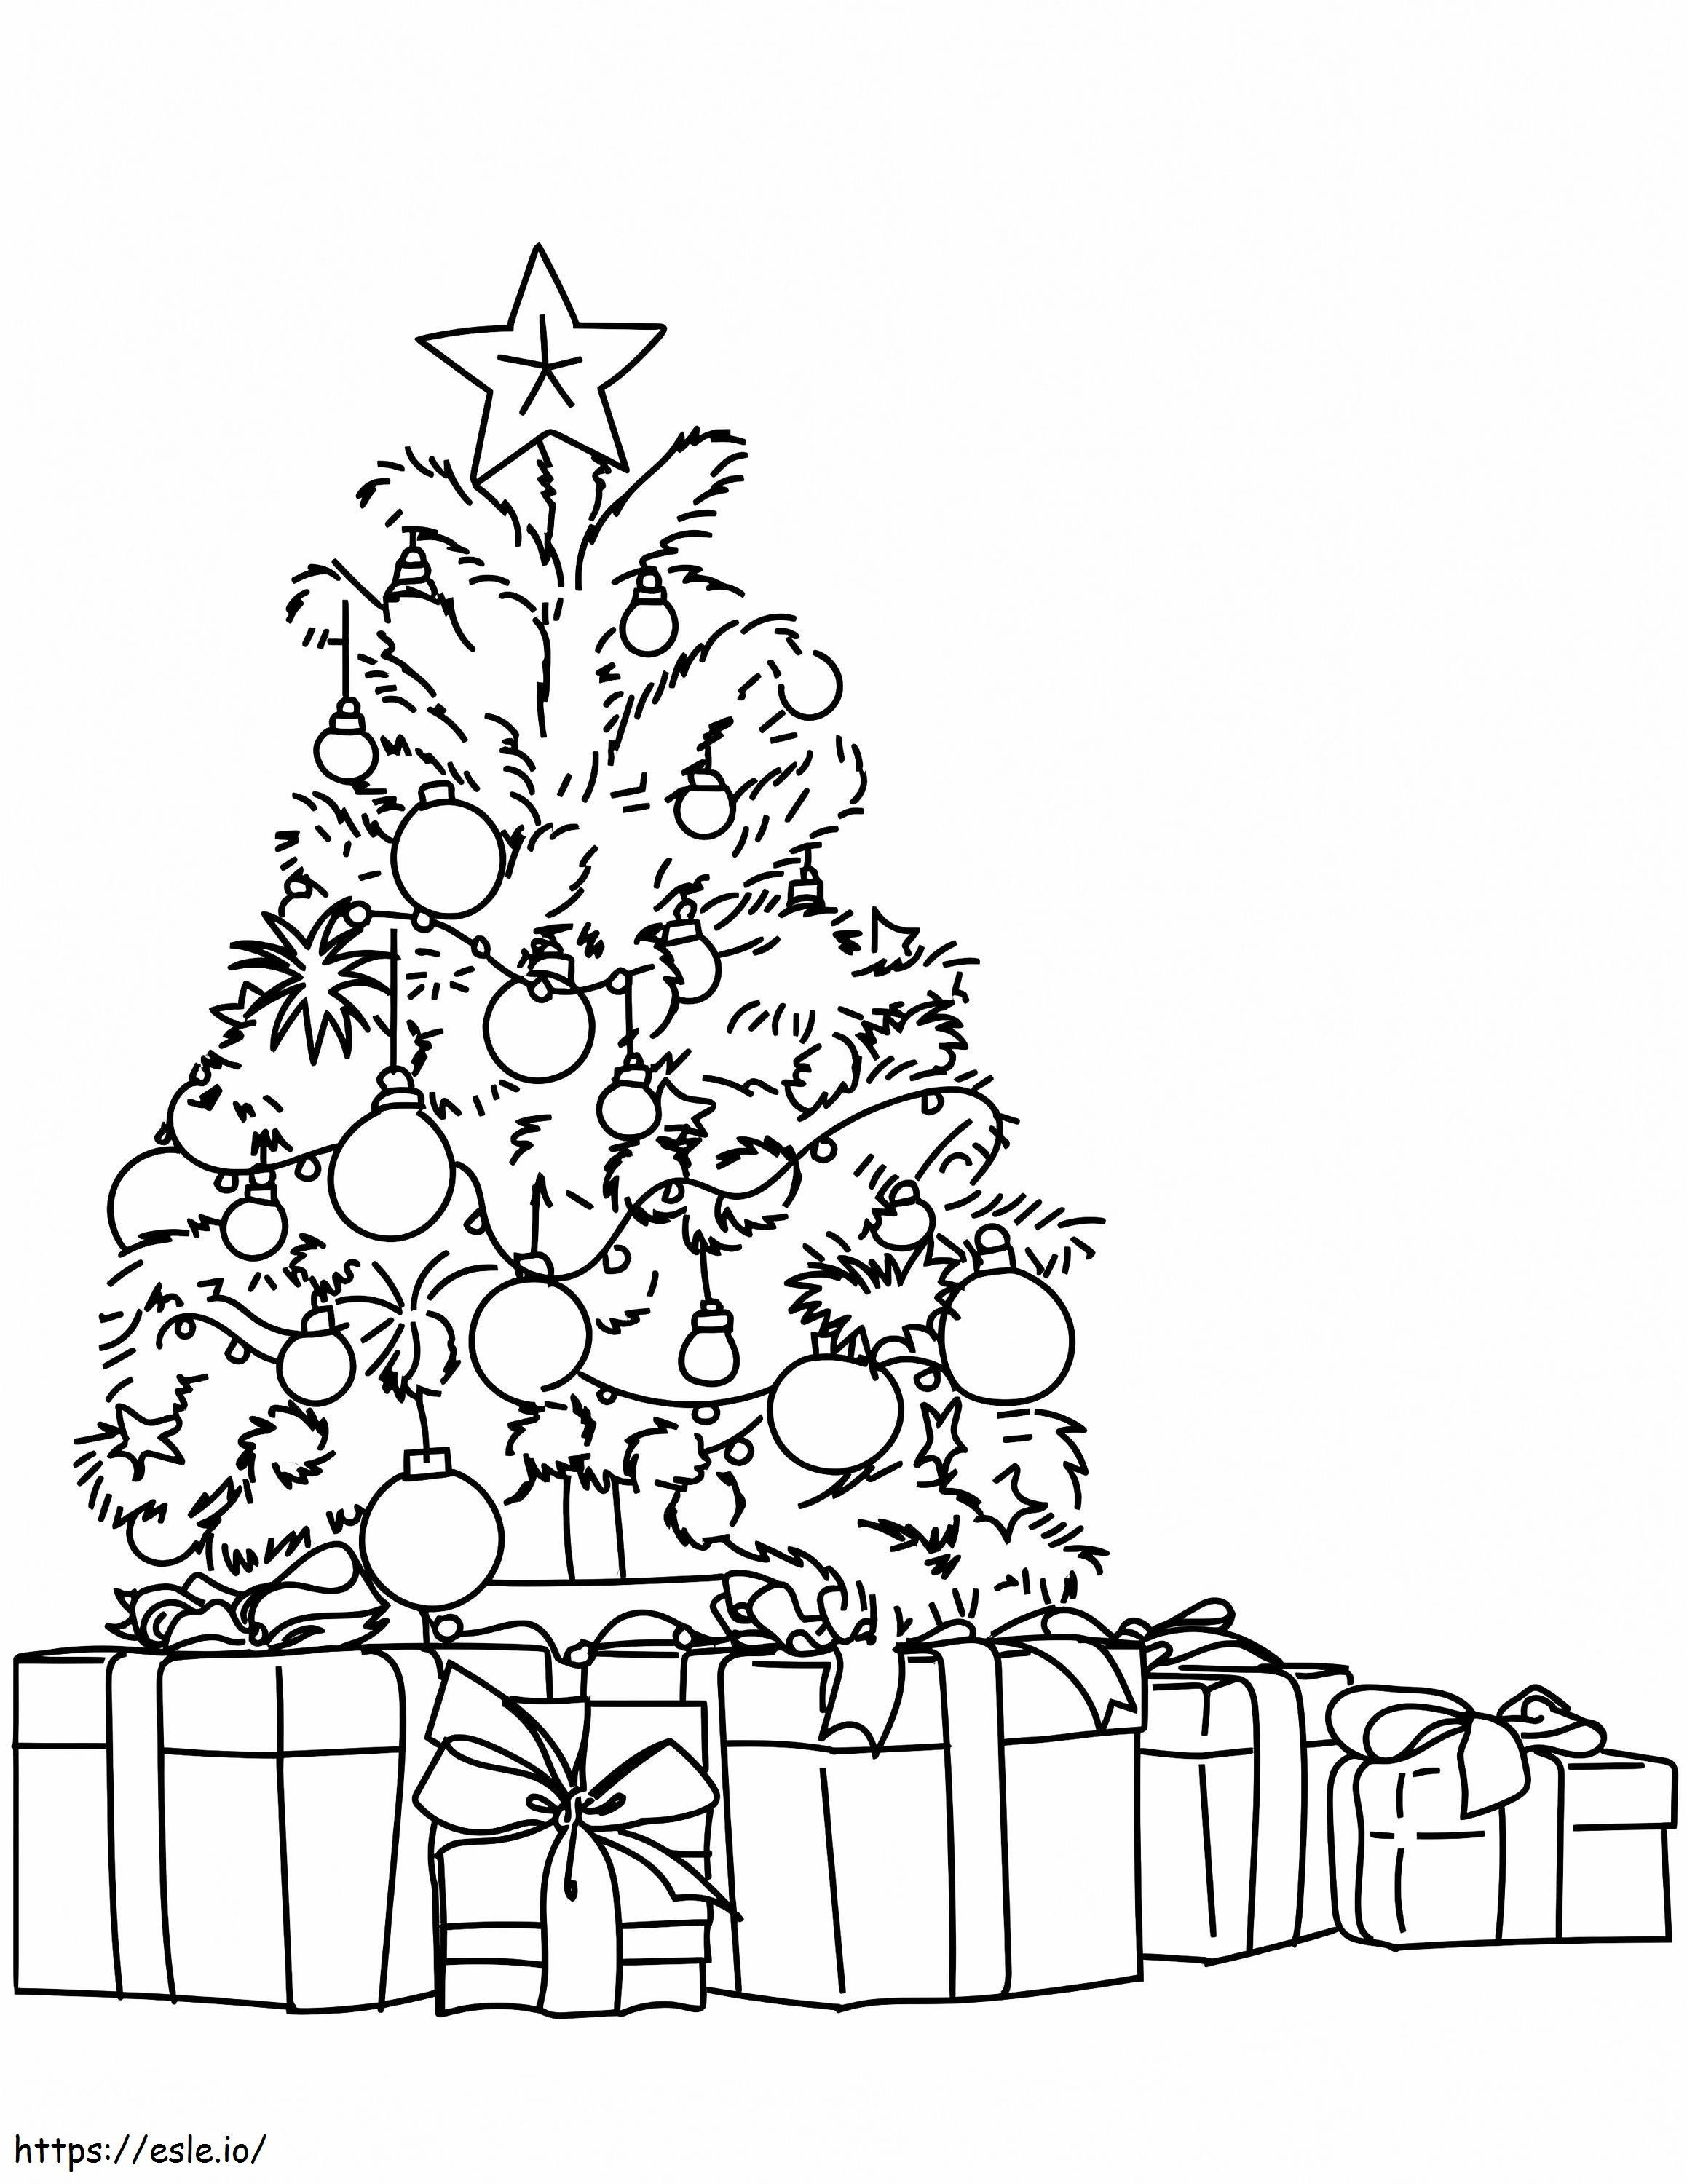 Weihnachtsbaum und Geschenke ausmalbilder